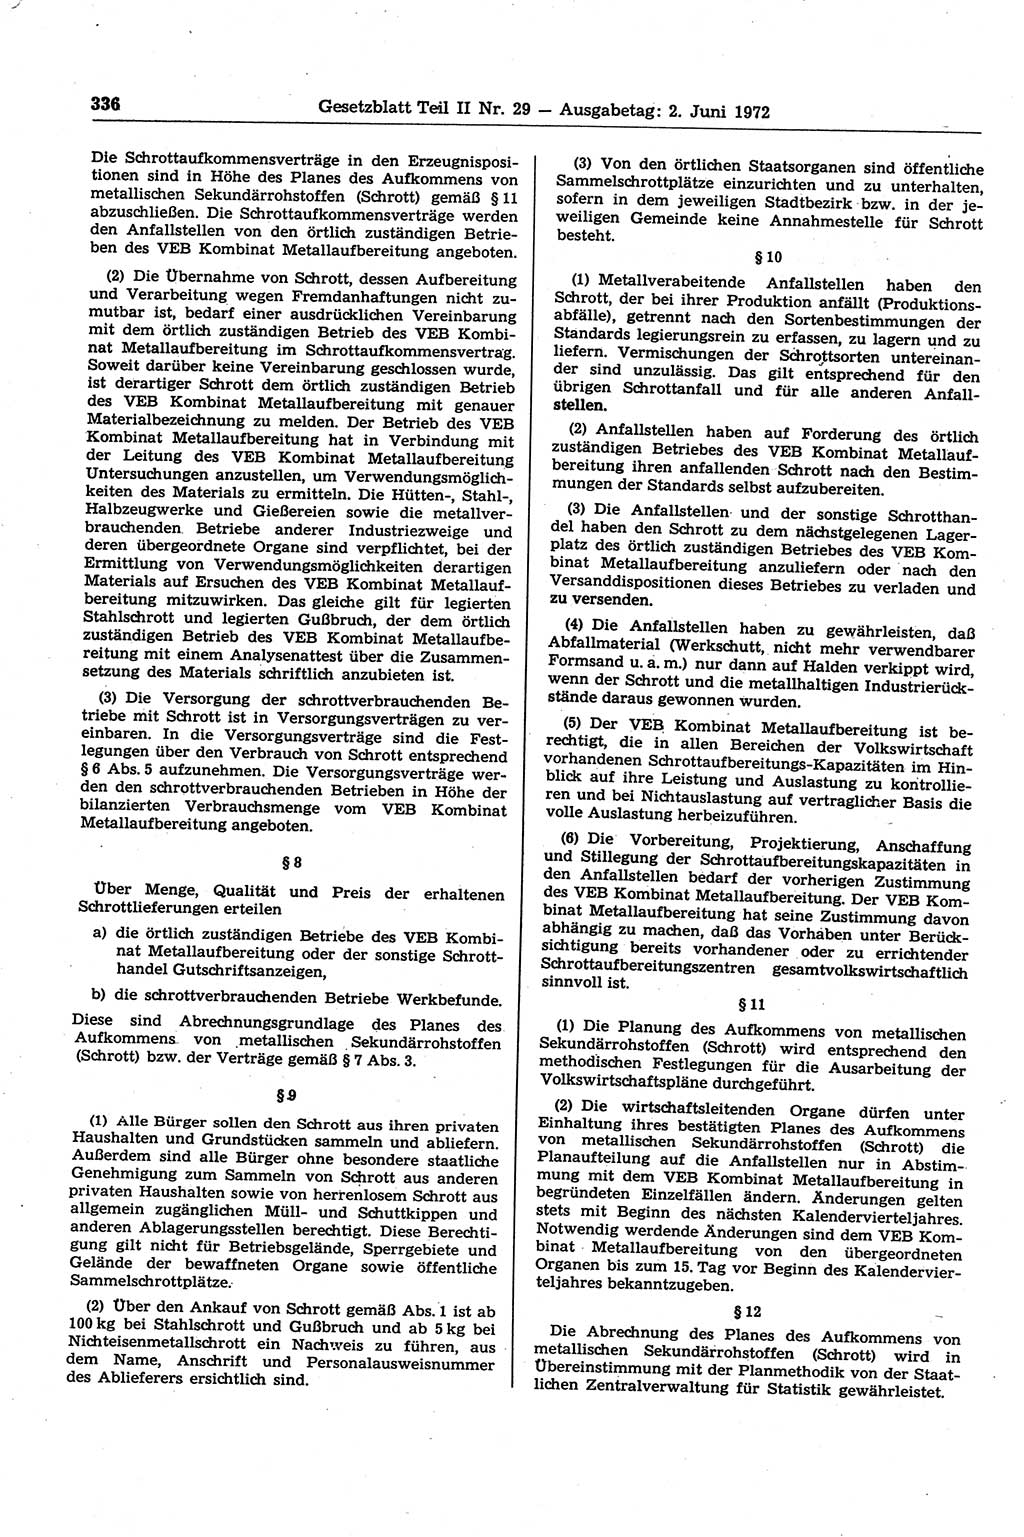 Gesetzblatt (GBl.) der Deutschen Demokratischen Republik (DDR) Teil ⅠⅠ 1972, Seite 336 (GBl. DDR ⅠⅠ 1972, S. 336)